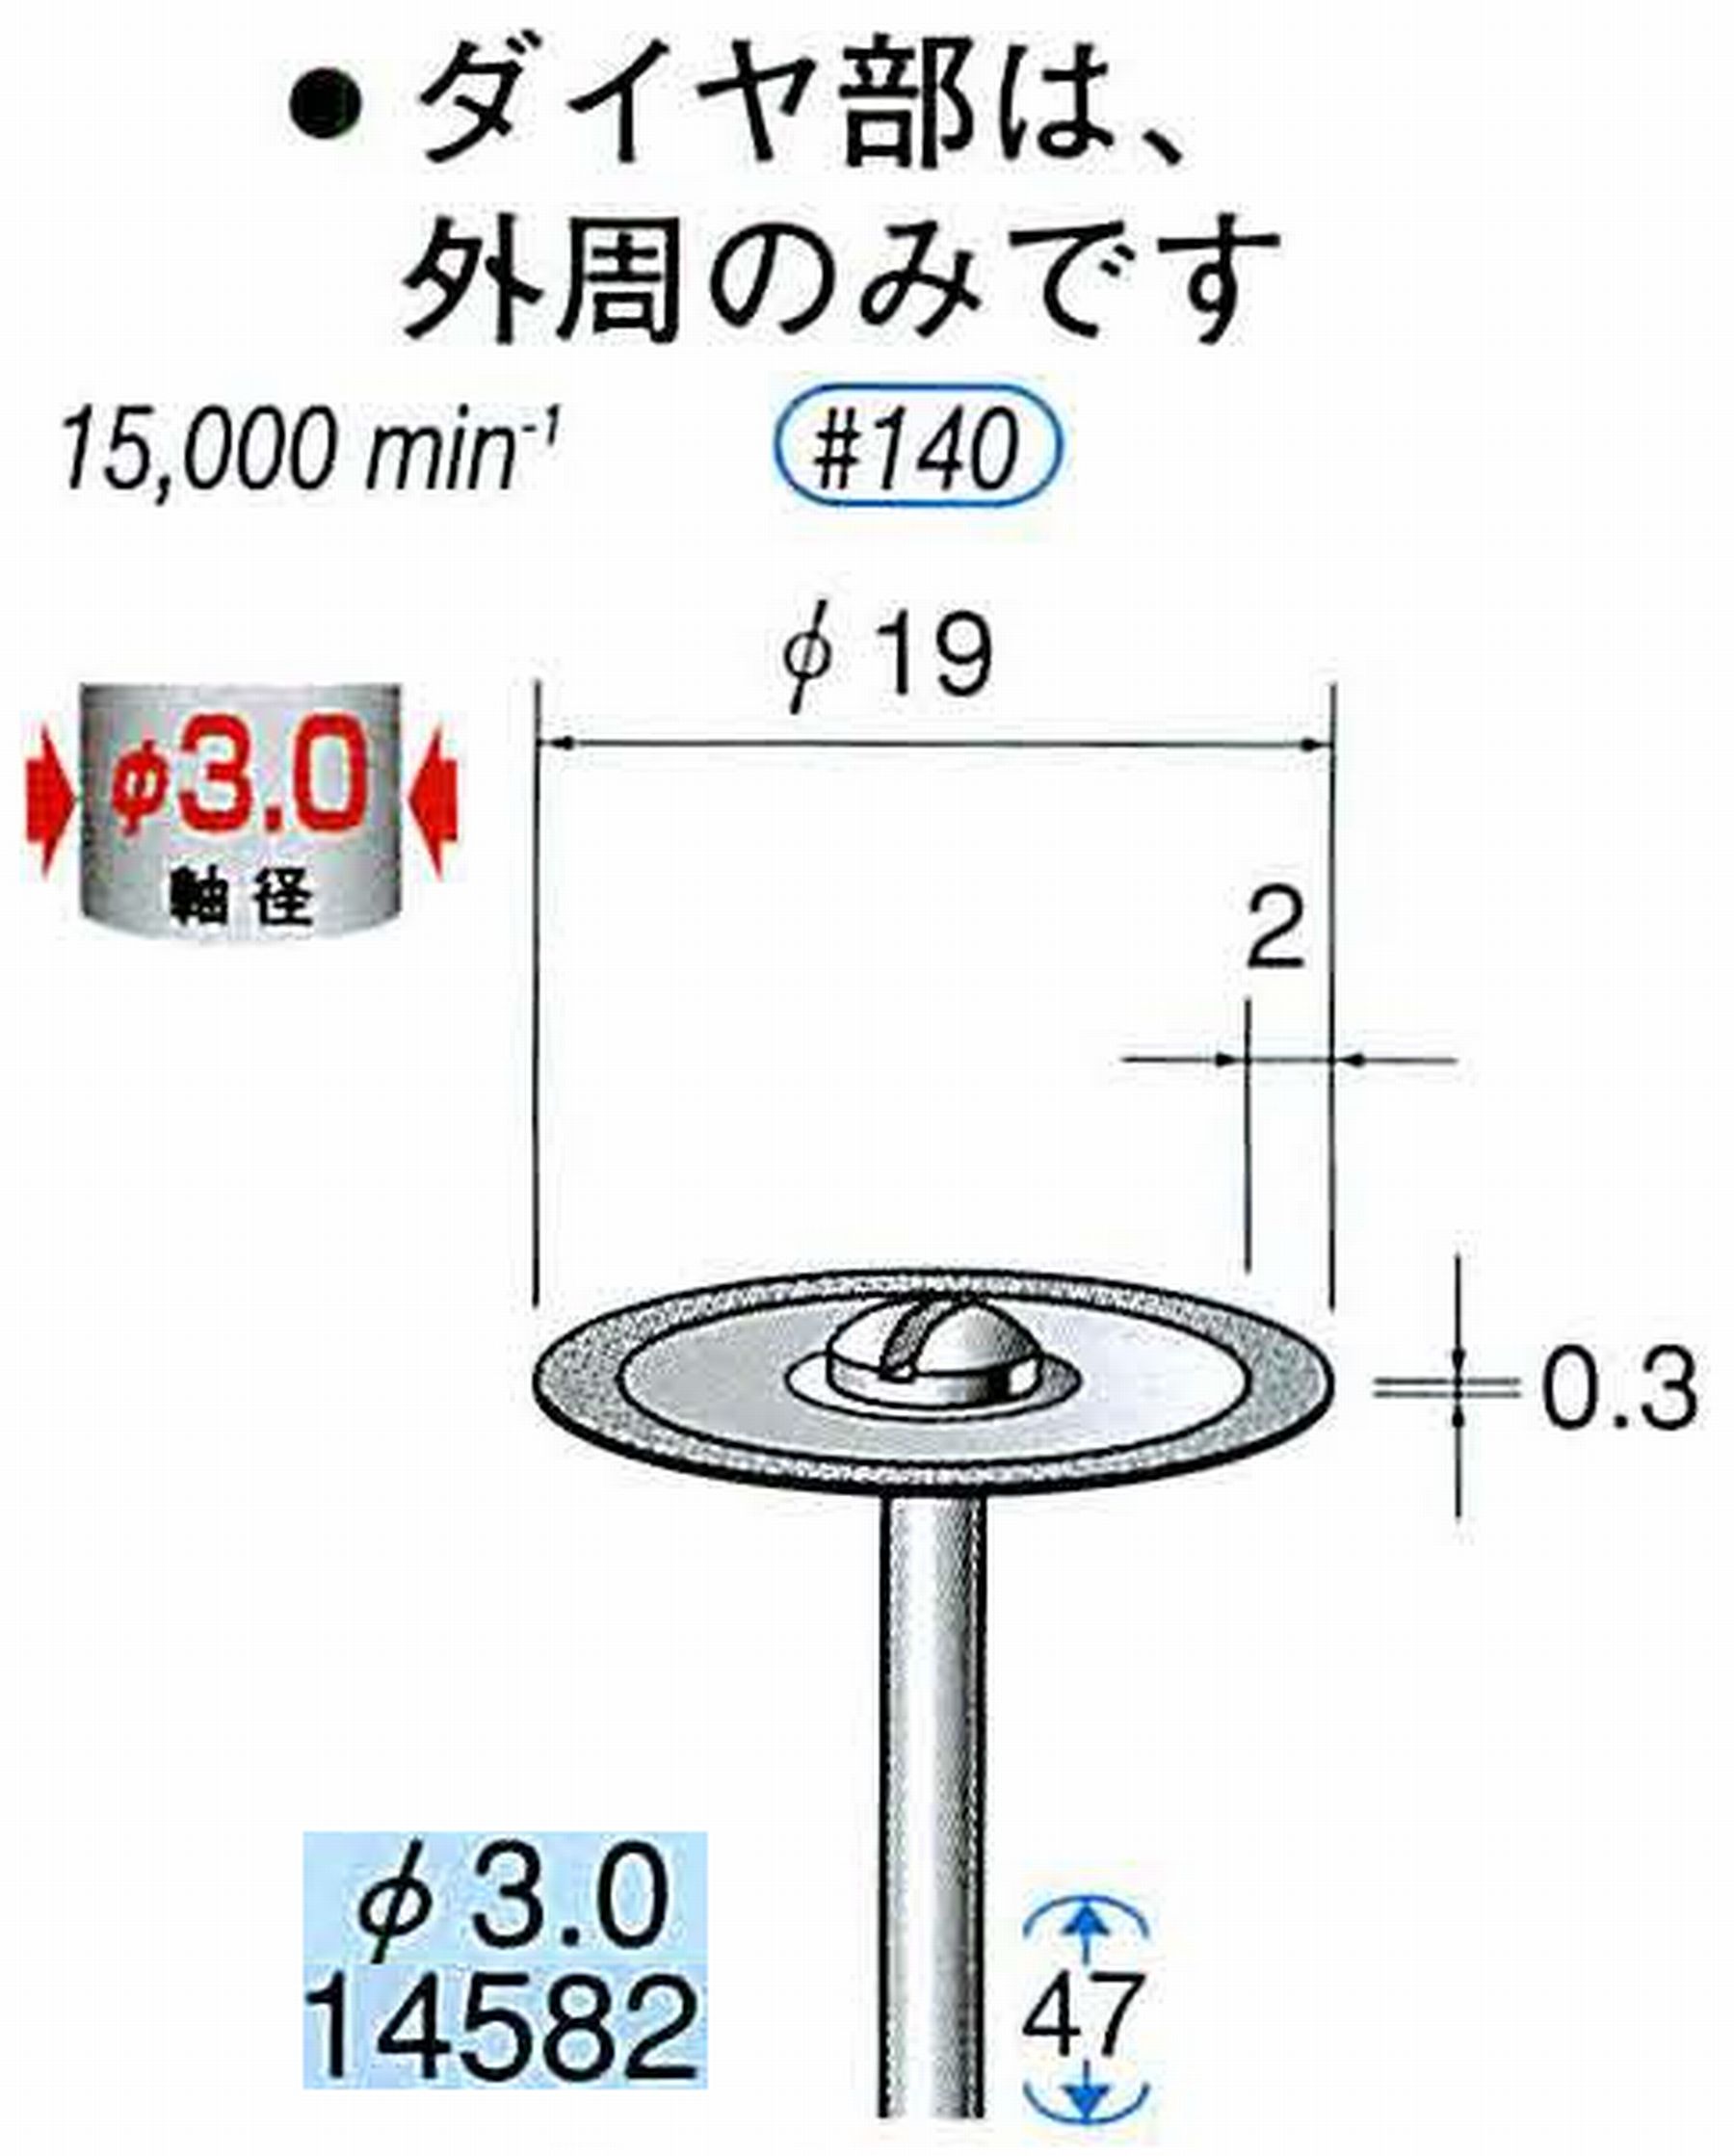 ナカニシ/NAKANISHI ダイヤモンドカッティングディスク メタルボンドタイプ 軸径(シャンク)φ3.0mm 14582